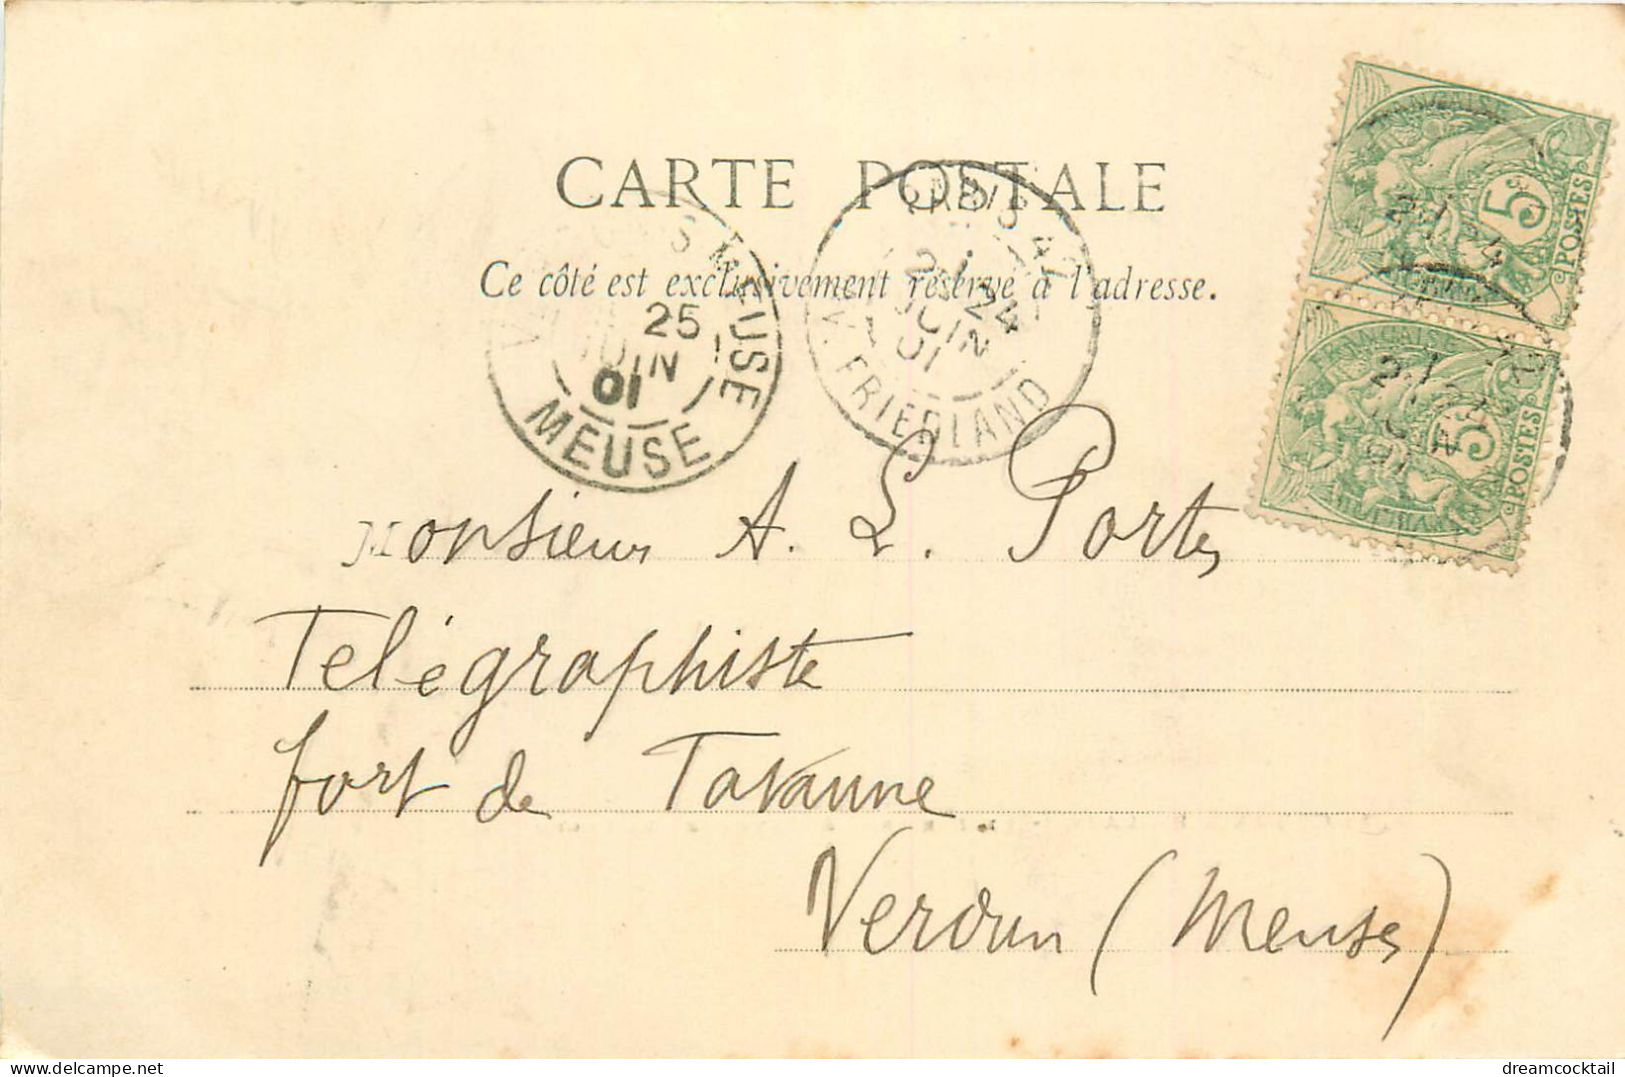 (S) Superbe LOT n°10 de 50 cartes postales anciennes France régionalisme